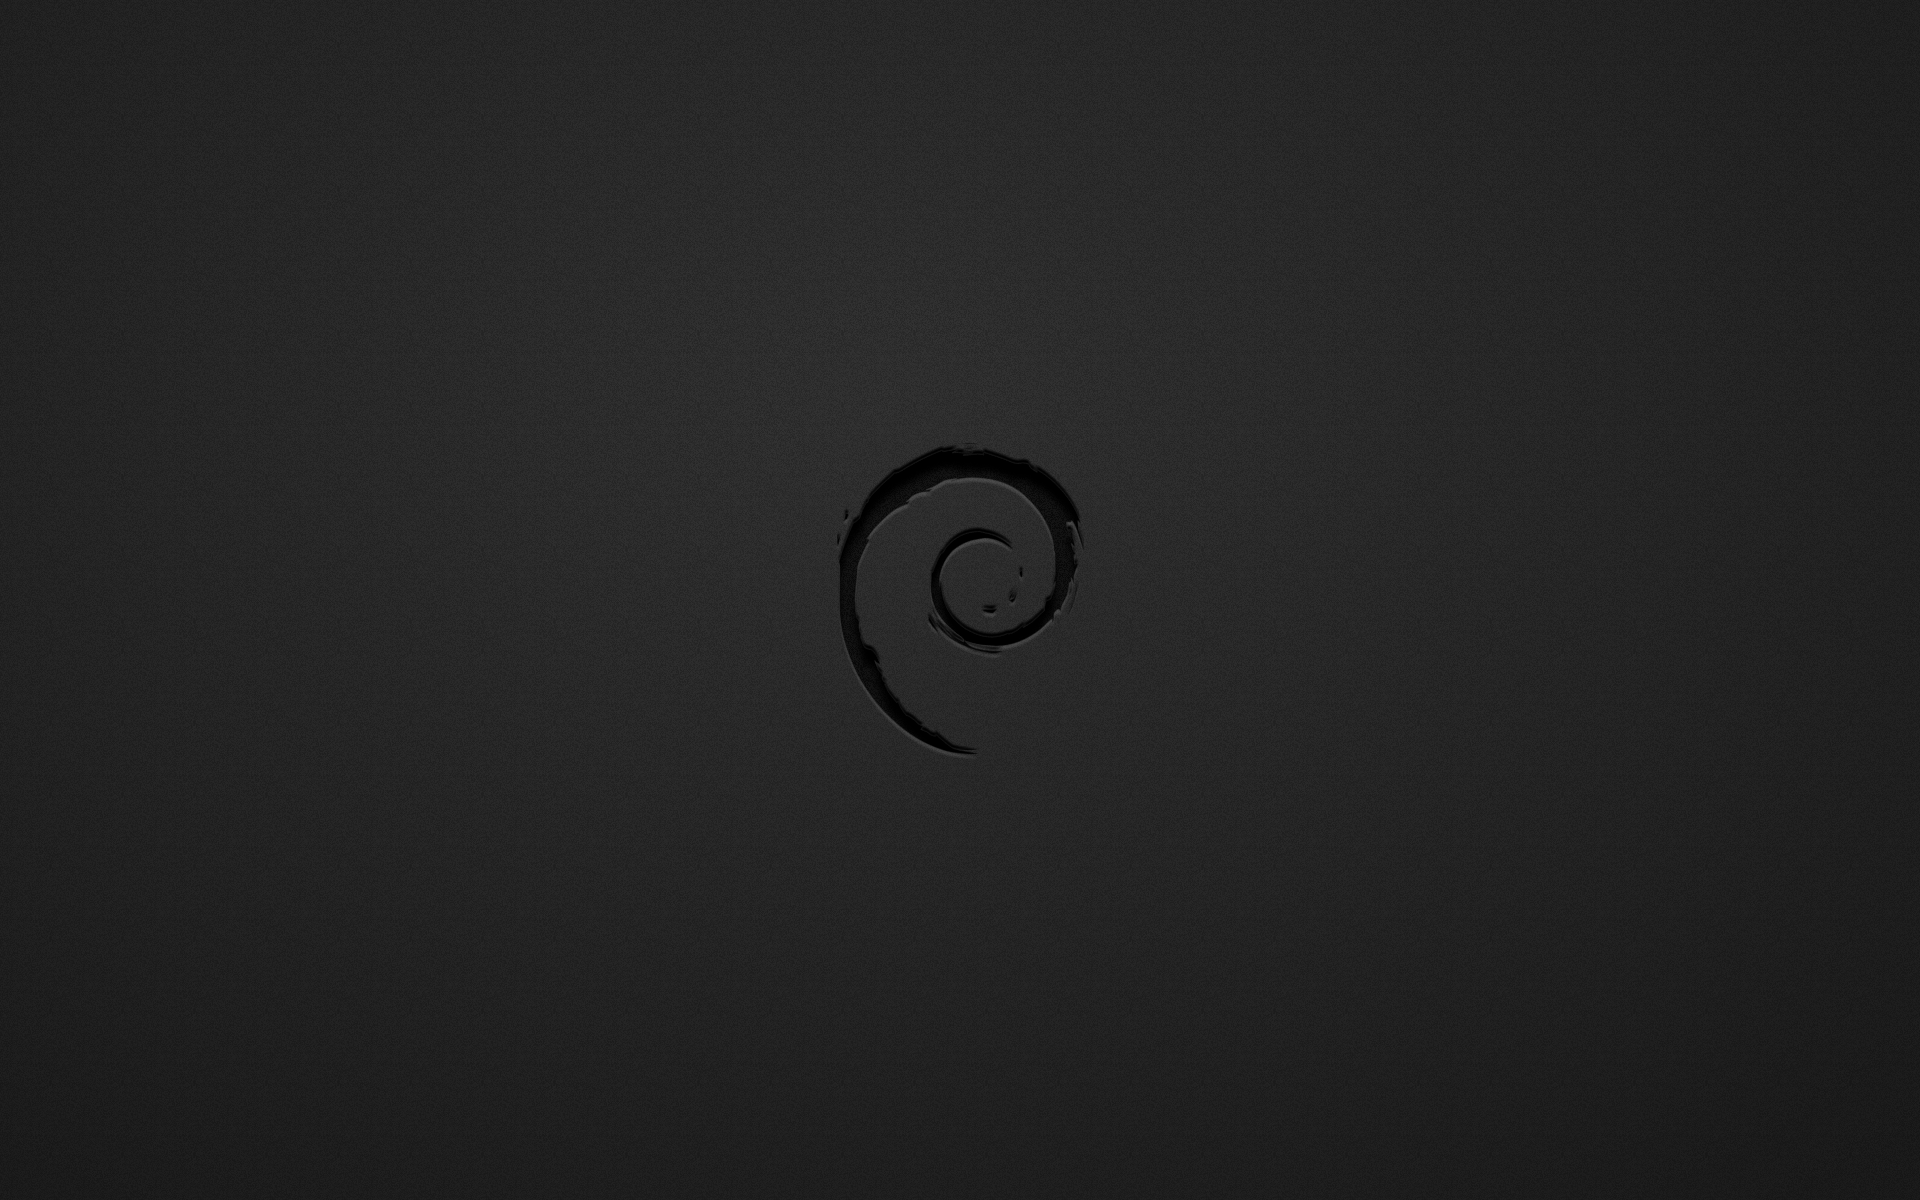 Debian Wallpaper Fondos De Pantalla Alta Definici N